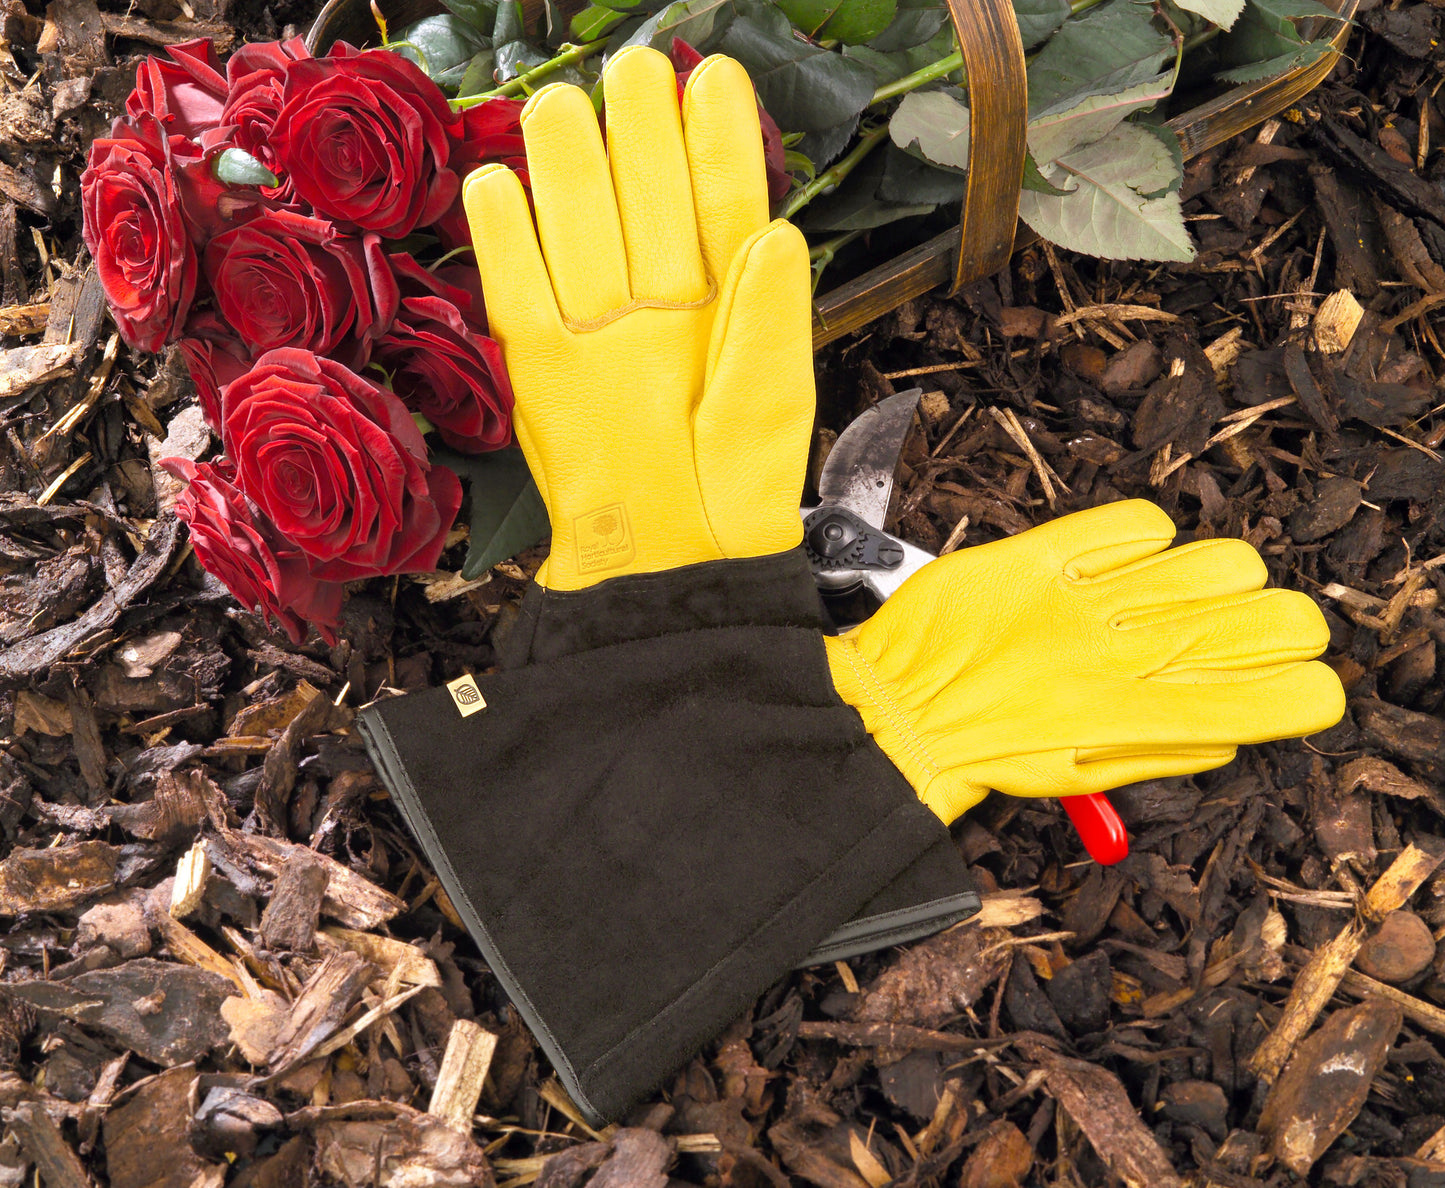 Hagehansker - Gold Leaf Tough Touch Gardening Glove